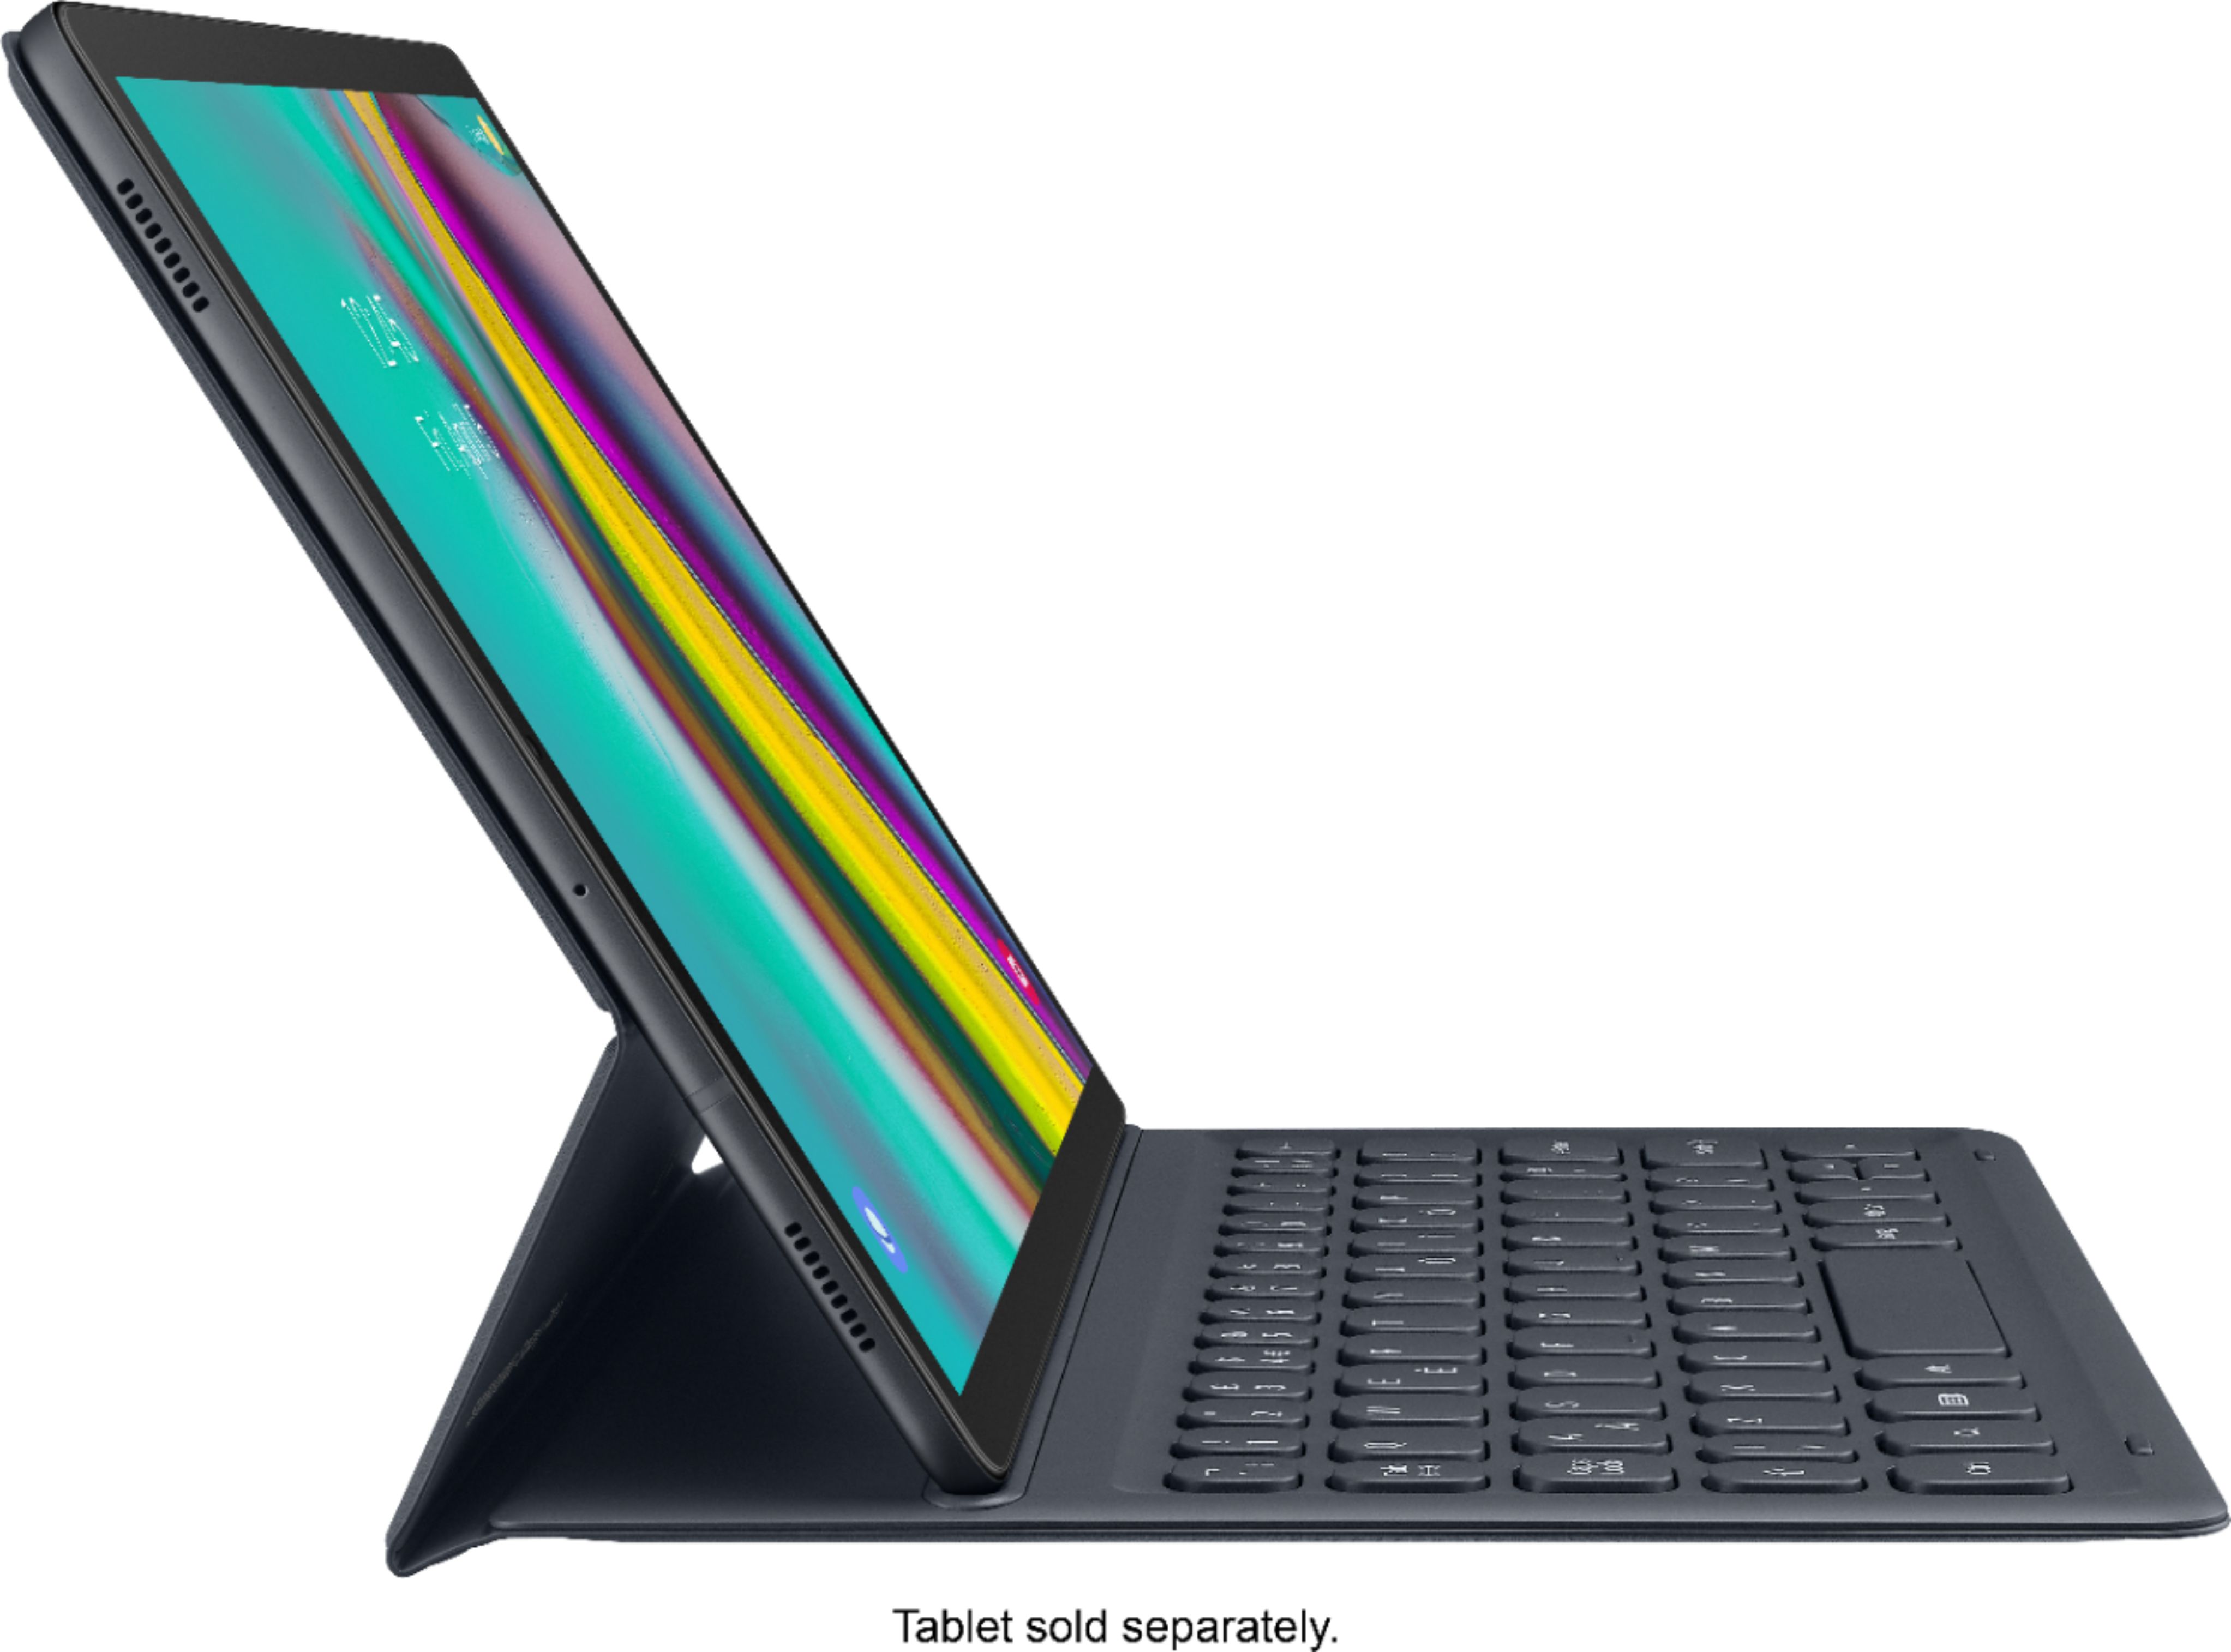 Best Buy: Samsung Book Cover Keyboard Folio Case for Galaxy Tab 